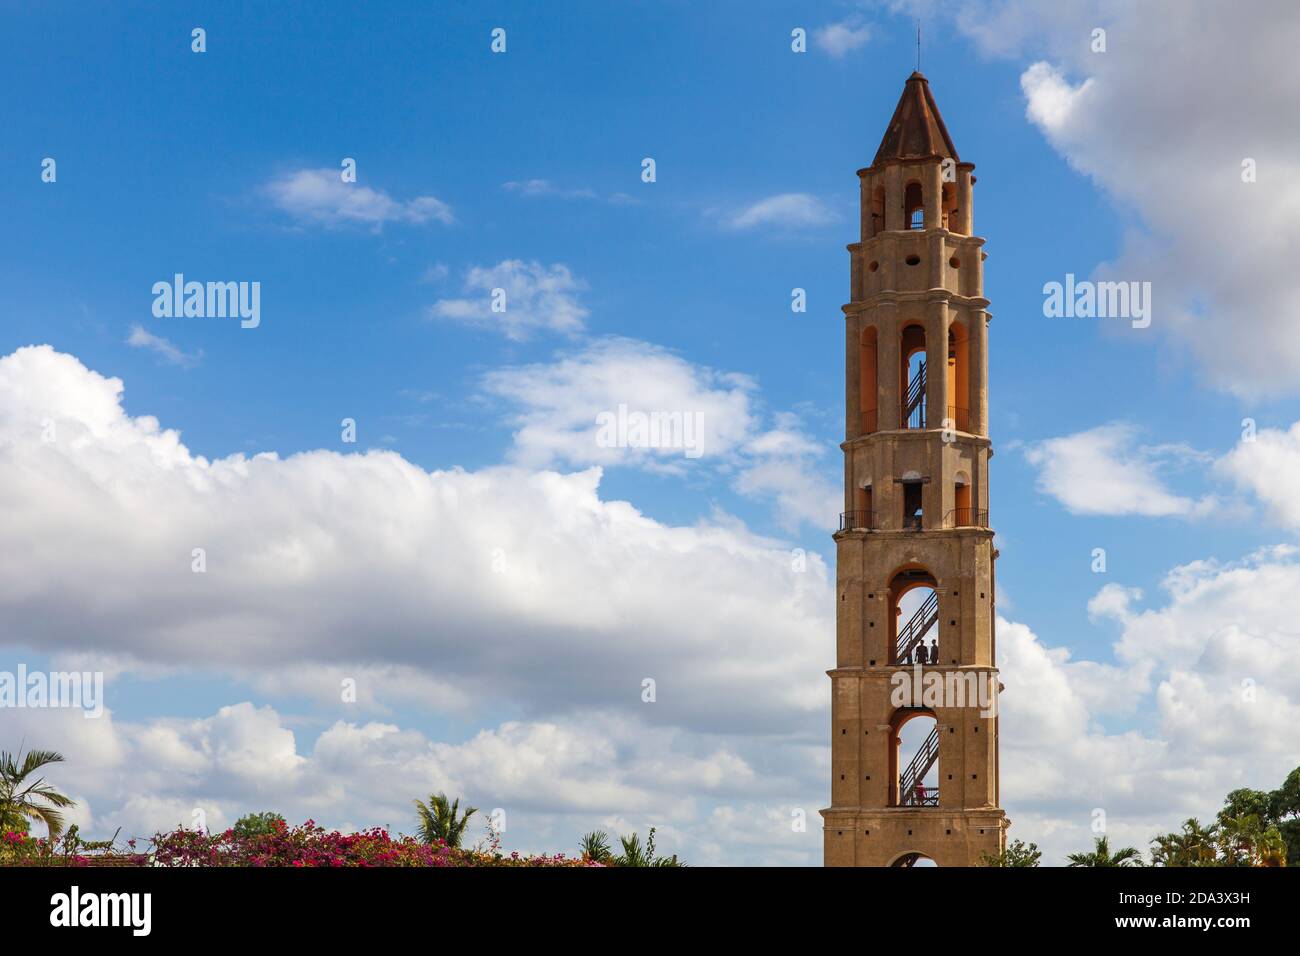 Kuba, Trinidad, Valle De Los Ingenios - Tal der Zuckermühlen, Manaca-Iznaga Turm - Sklaventurm Stockfoto